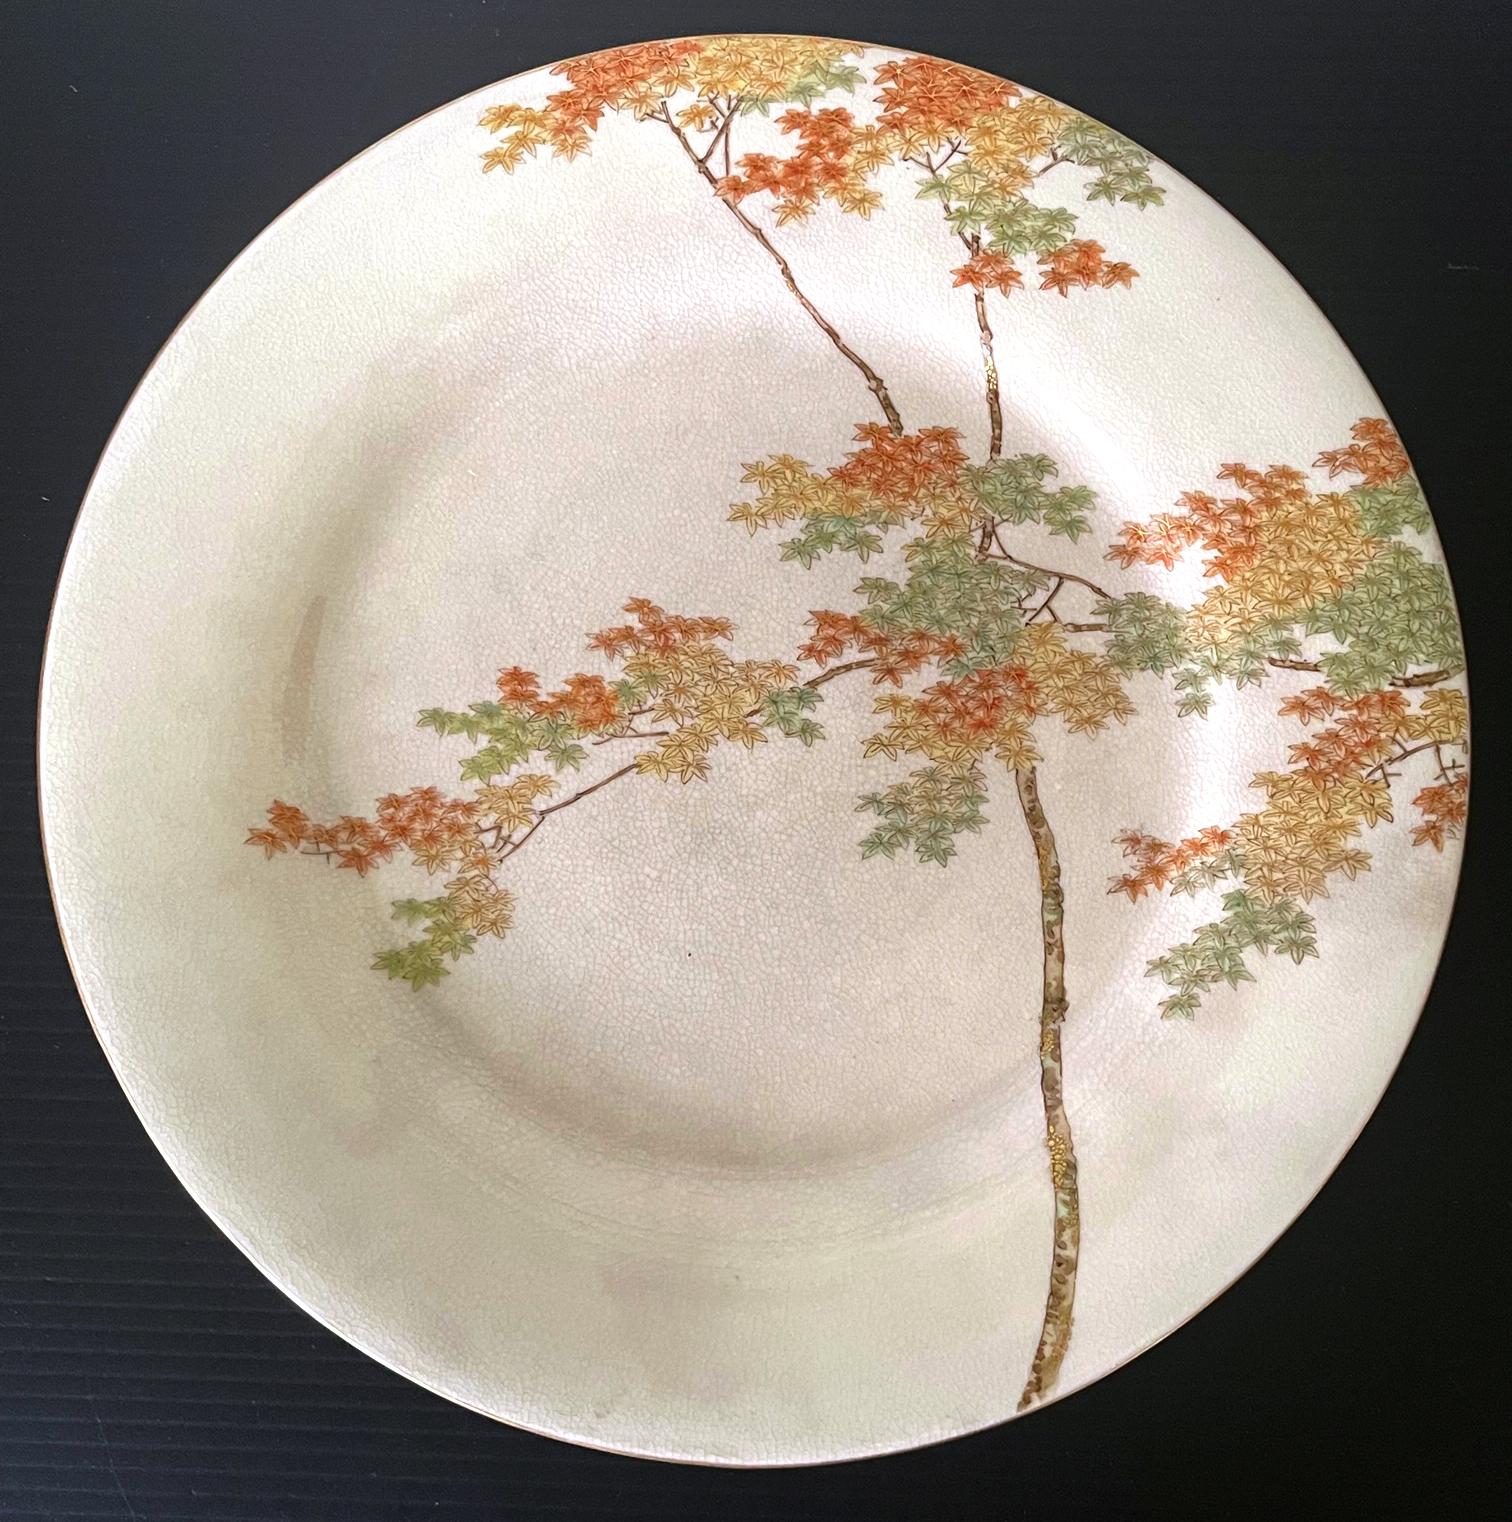 Ein feiner japanischer Satsuma-Keramikteller, hergestellt von Kinkozan und vertrieben von Yamanaka & Co. um 1900-20 (späte Meiji- bis frühe Tasho-Periode). Der cremefarbene, glasierte Teller zeigt ein sehr feines Dekor eines Ahornbaums inmitten von